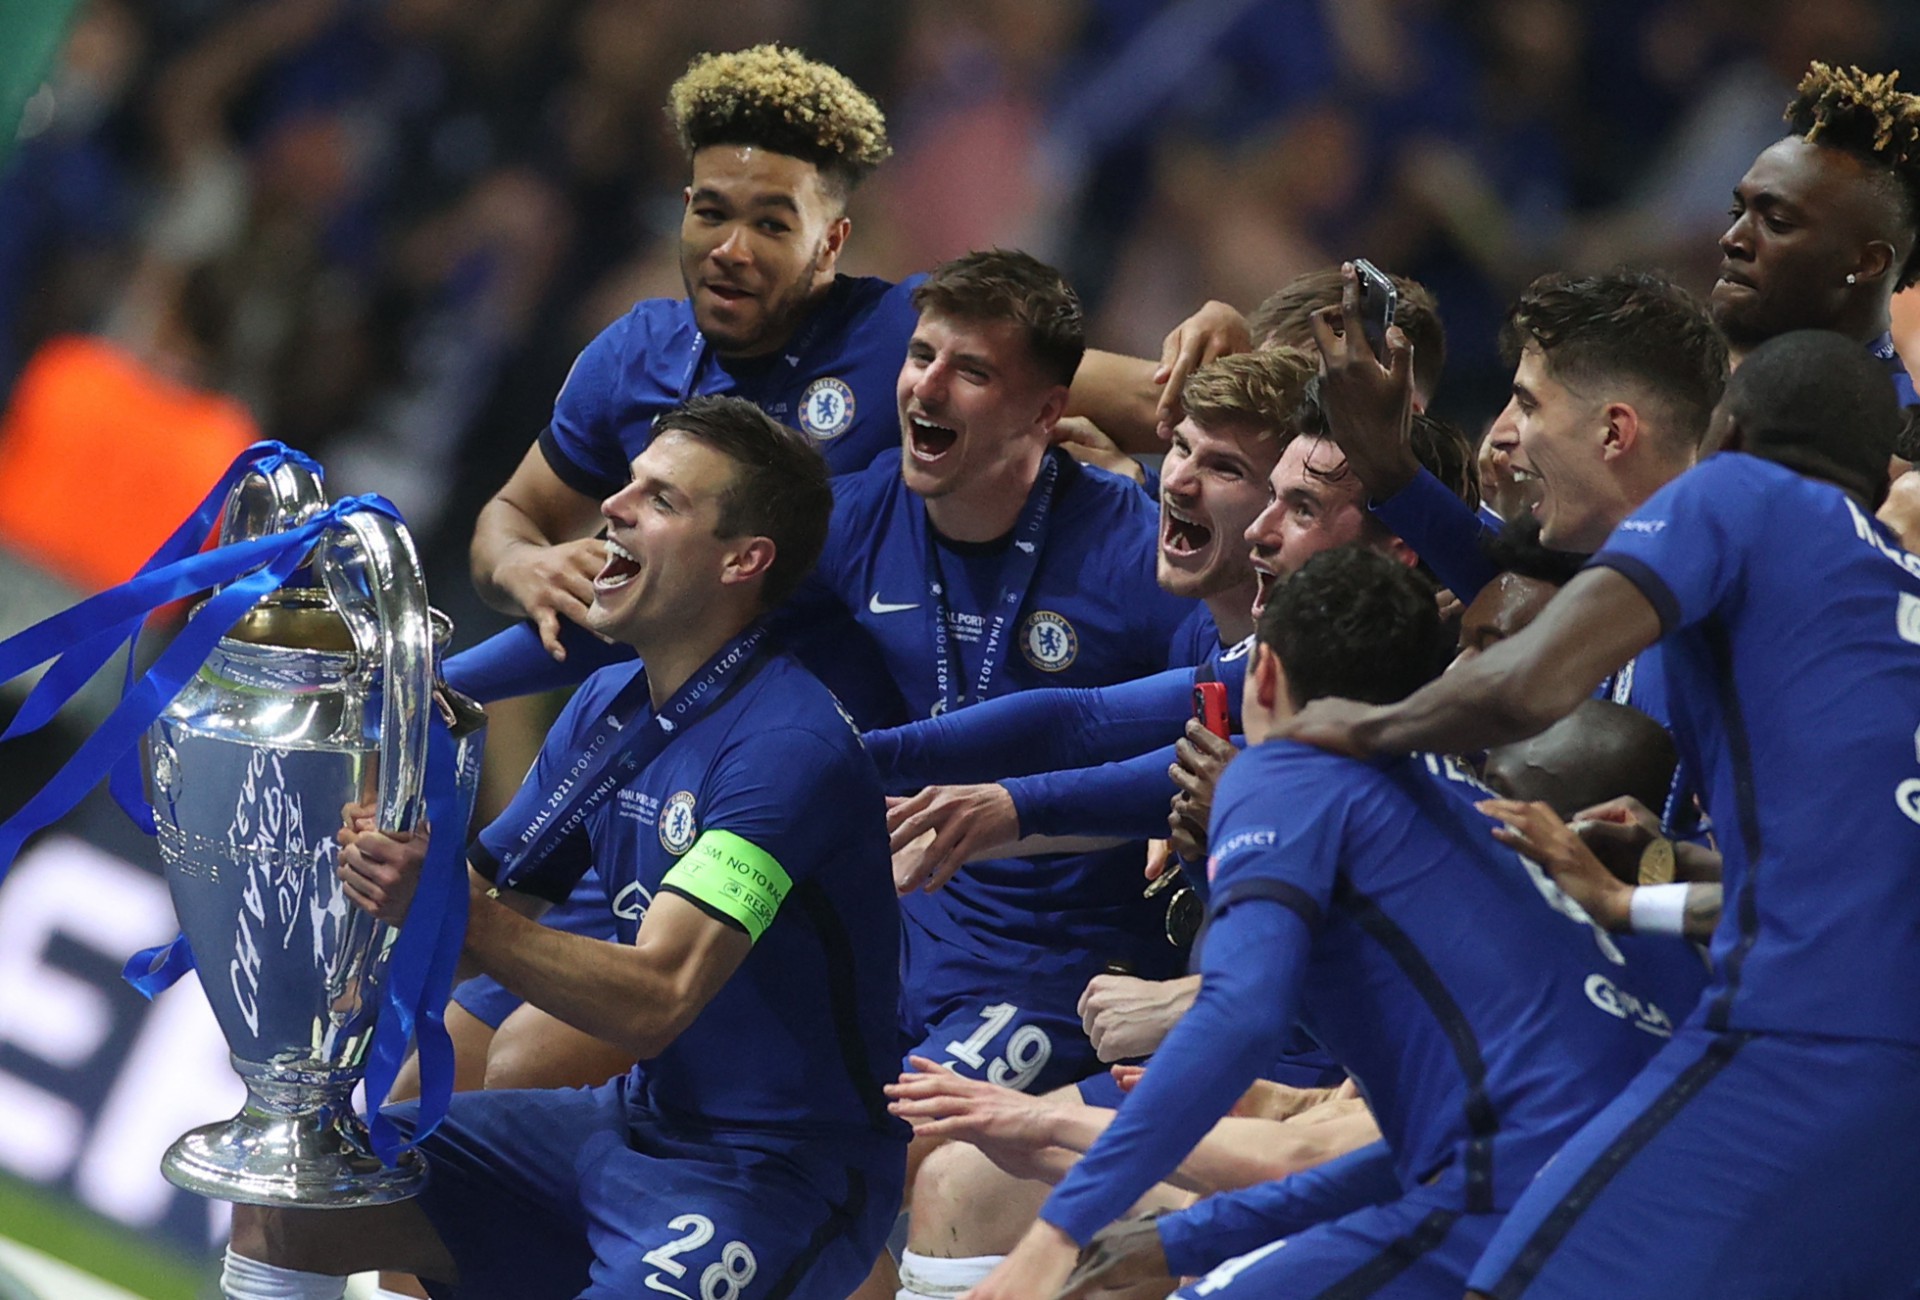 Chelsea vence Manchester City e conquista a Champions League 2020